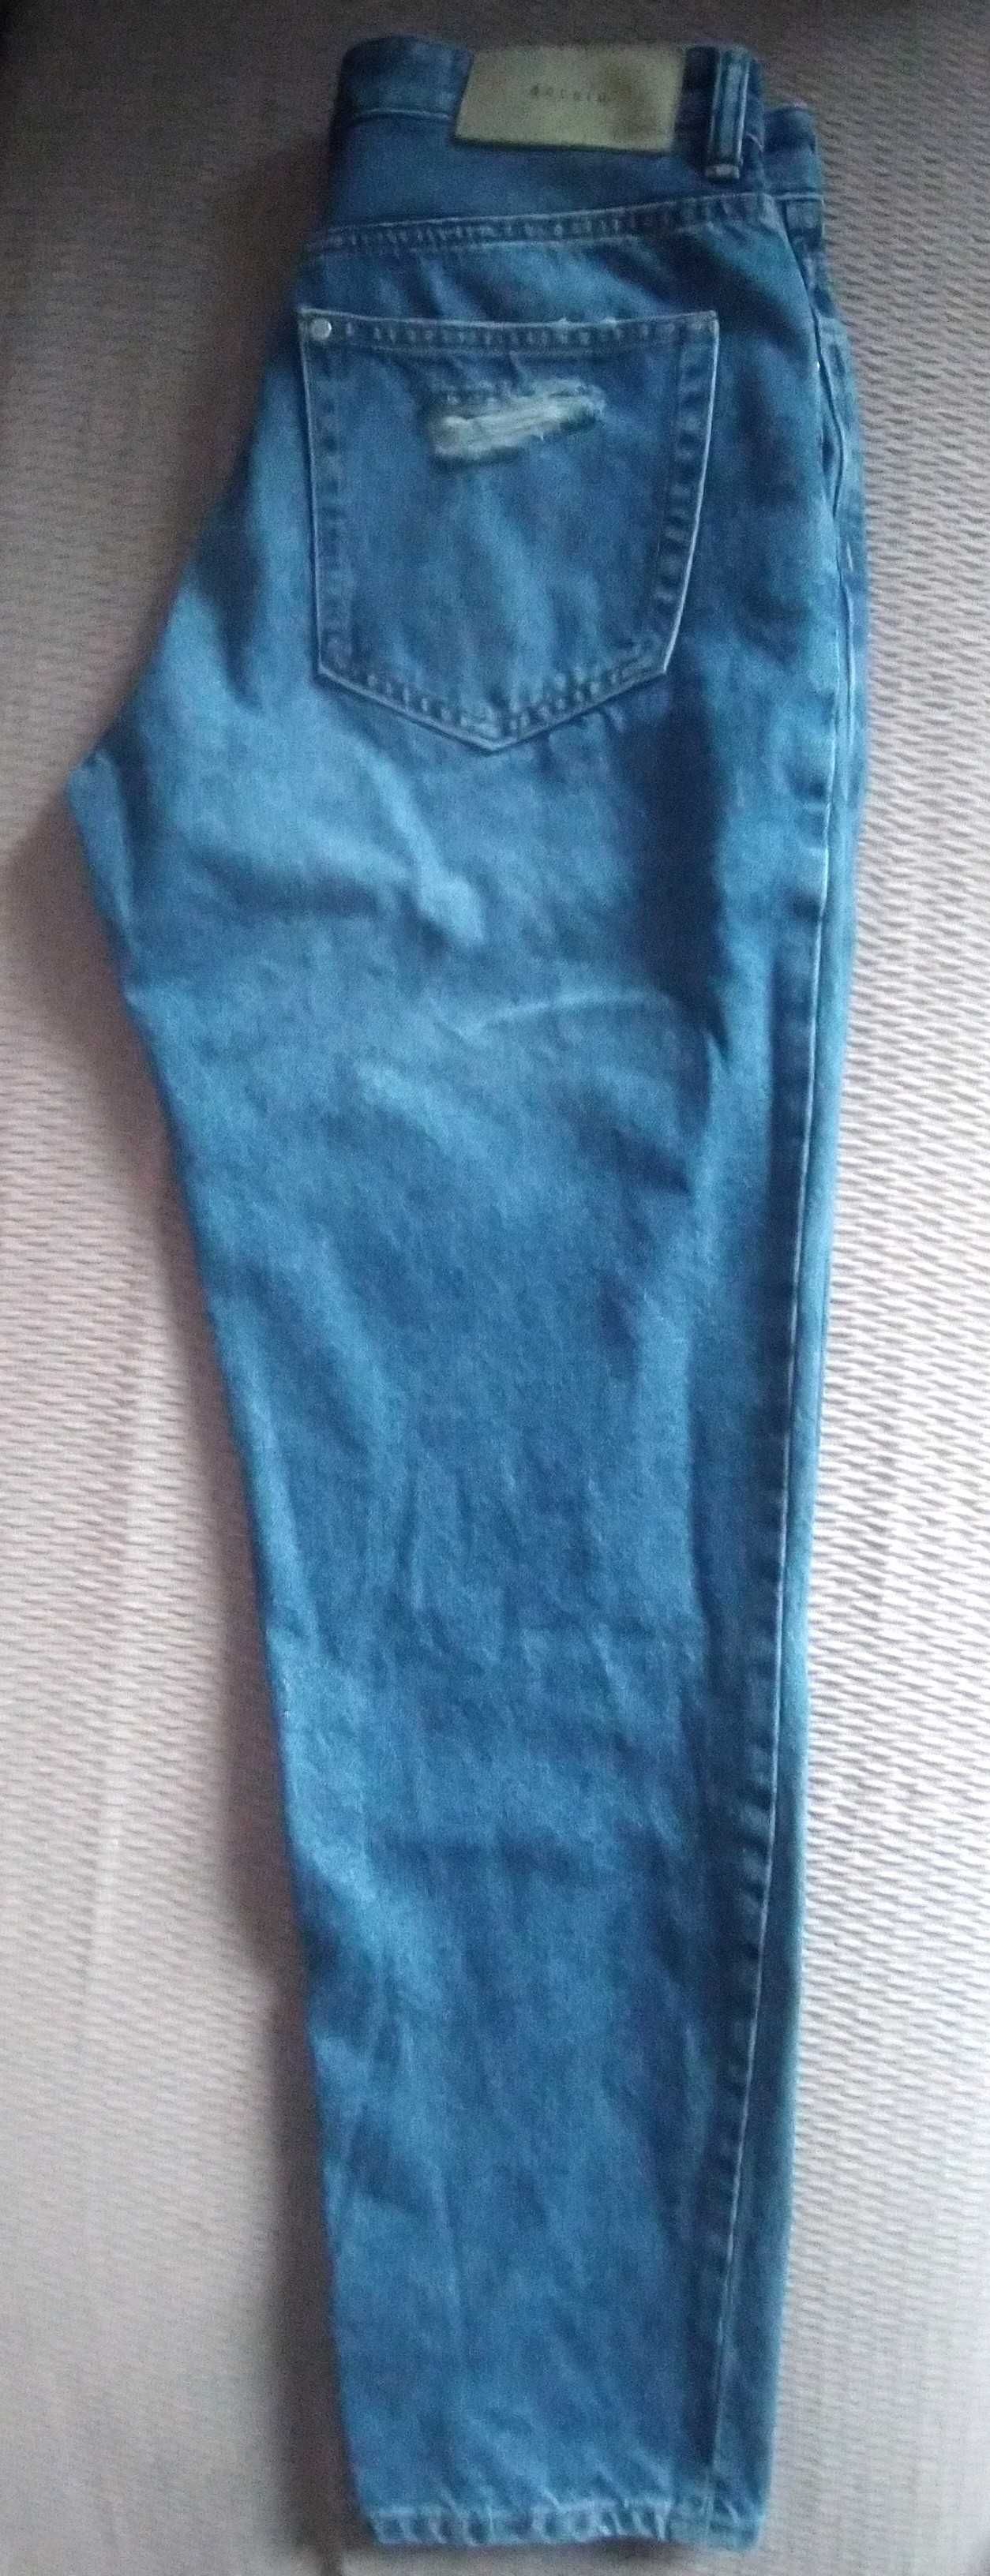 Calças Jeans com rasgões